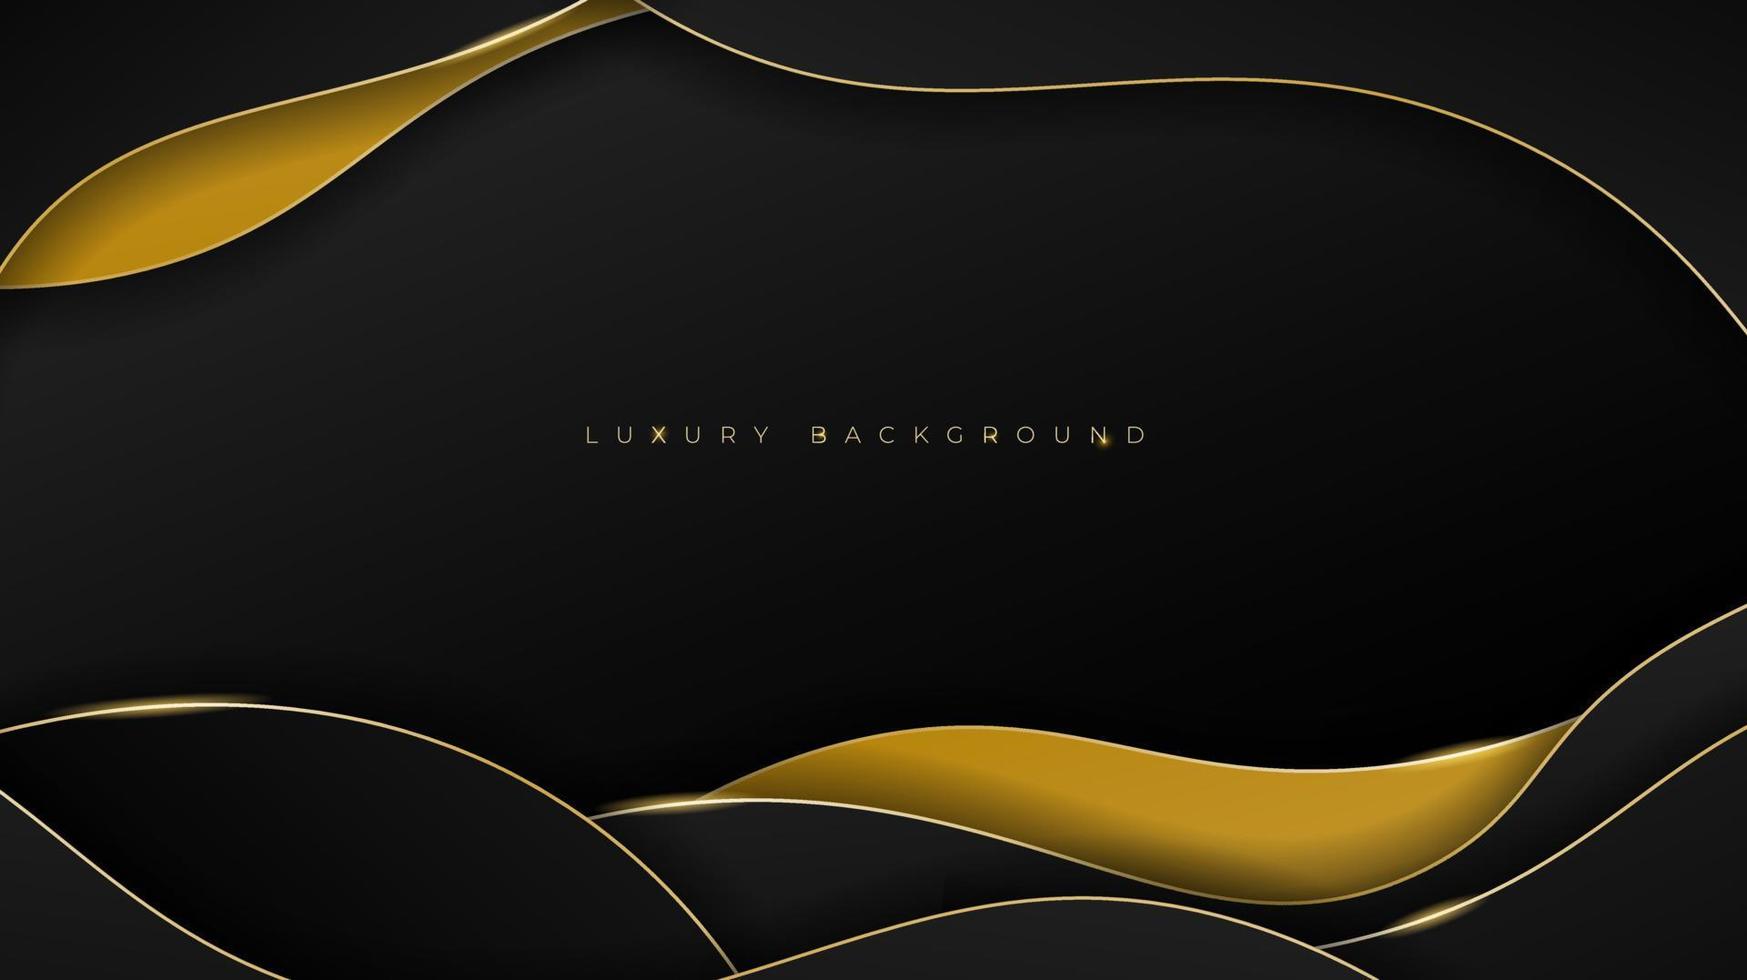 Background design (thiết kế nền đen vàng): Khám phá những thiết kế nền đen và vàng đầy ấn tượng để làm nền cho trang web hoặc thiết kế poster. Với chất liệu độc đáo và phong cách tinh tế, các thiết kế này chắc chắn sẽ giúp tăng tính chuyên nghiệp và thu hút sự chú ý của khách hàng.